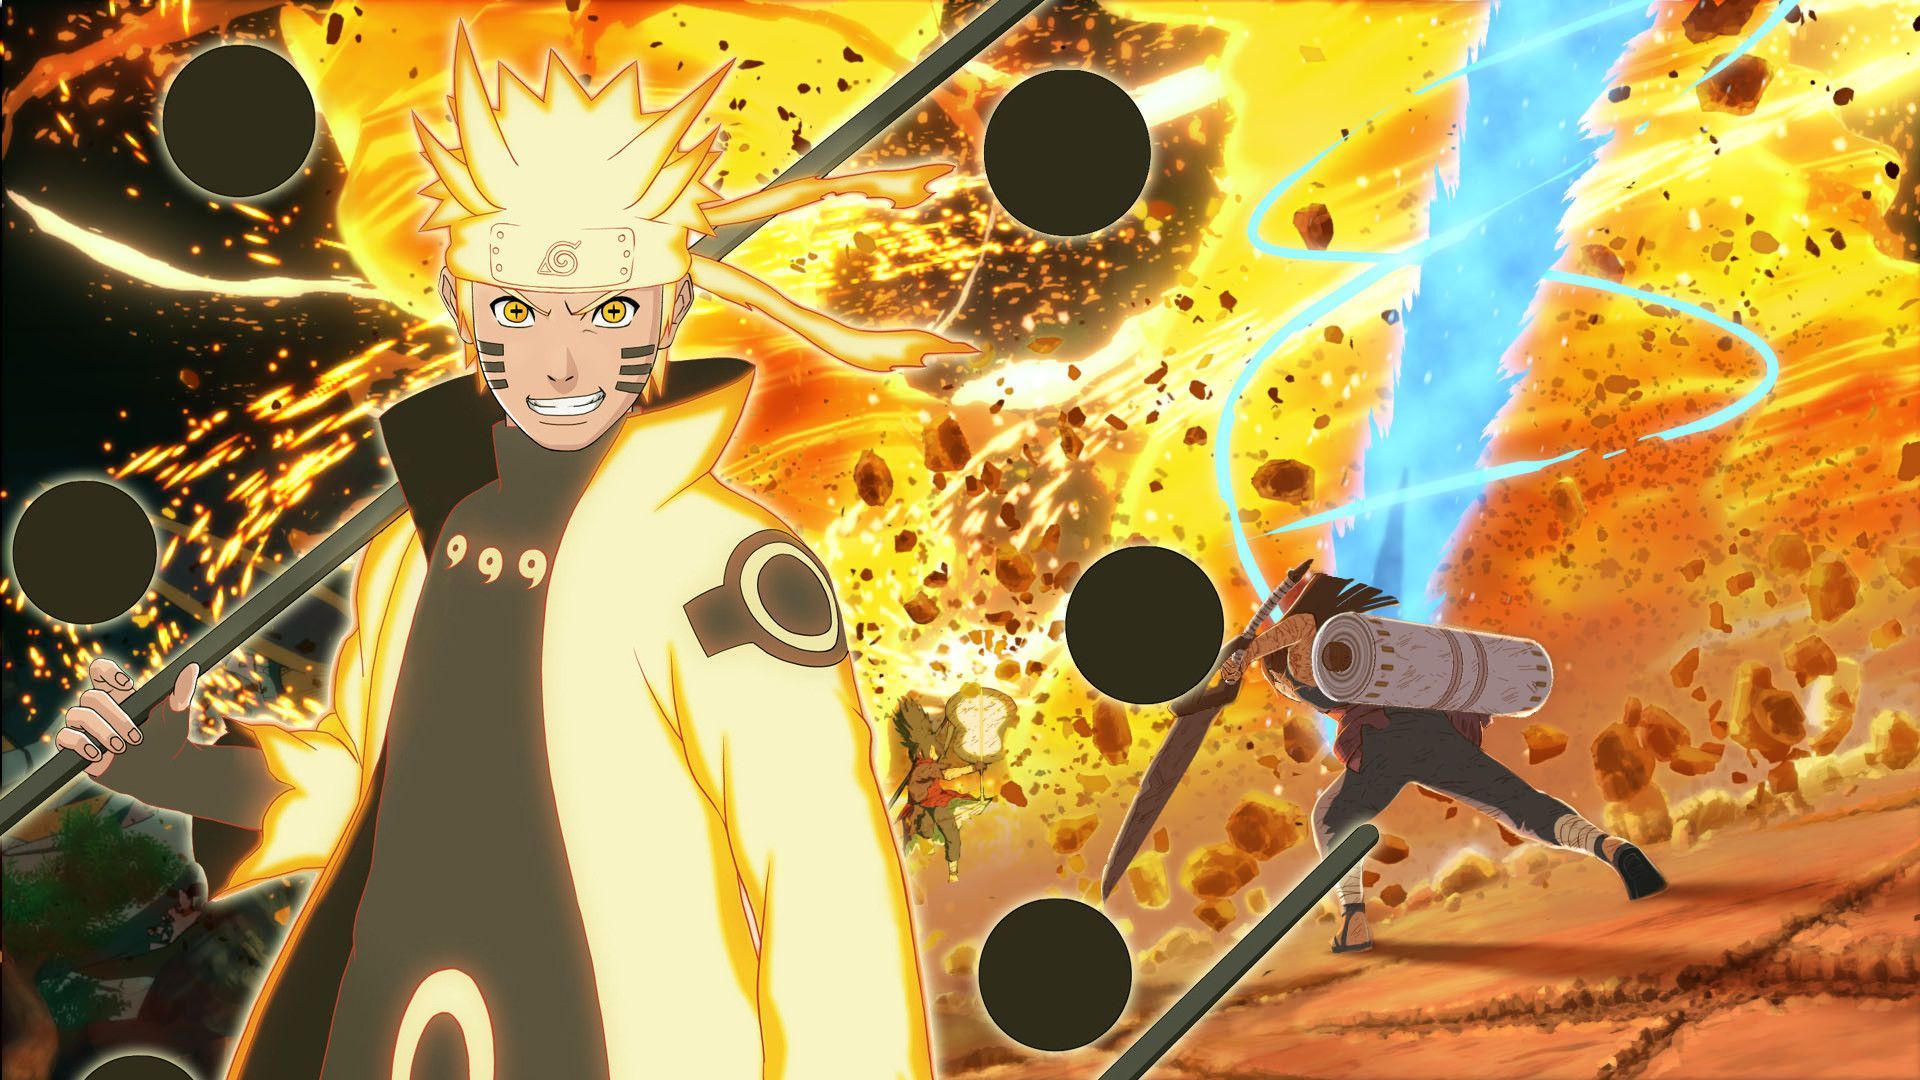 Naruto Uzumaki: Naruto Uzumaki - một anh hùng vĩ đại trong thế giới Naruto. Hãy xem hình ảnh của Naruto để nhận thấy tính cách đáng yêu, tinh khiết và sức mạnh phi thường của anh ta trong cuộc phiêu lưu vô tận này.